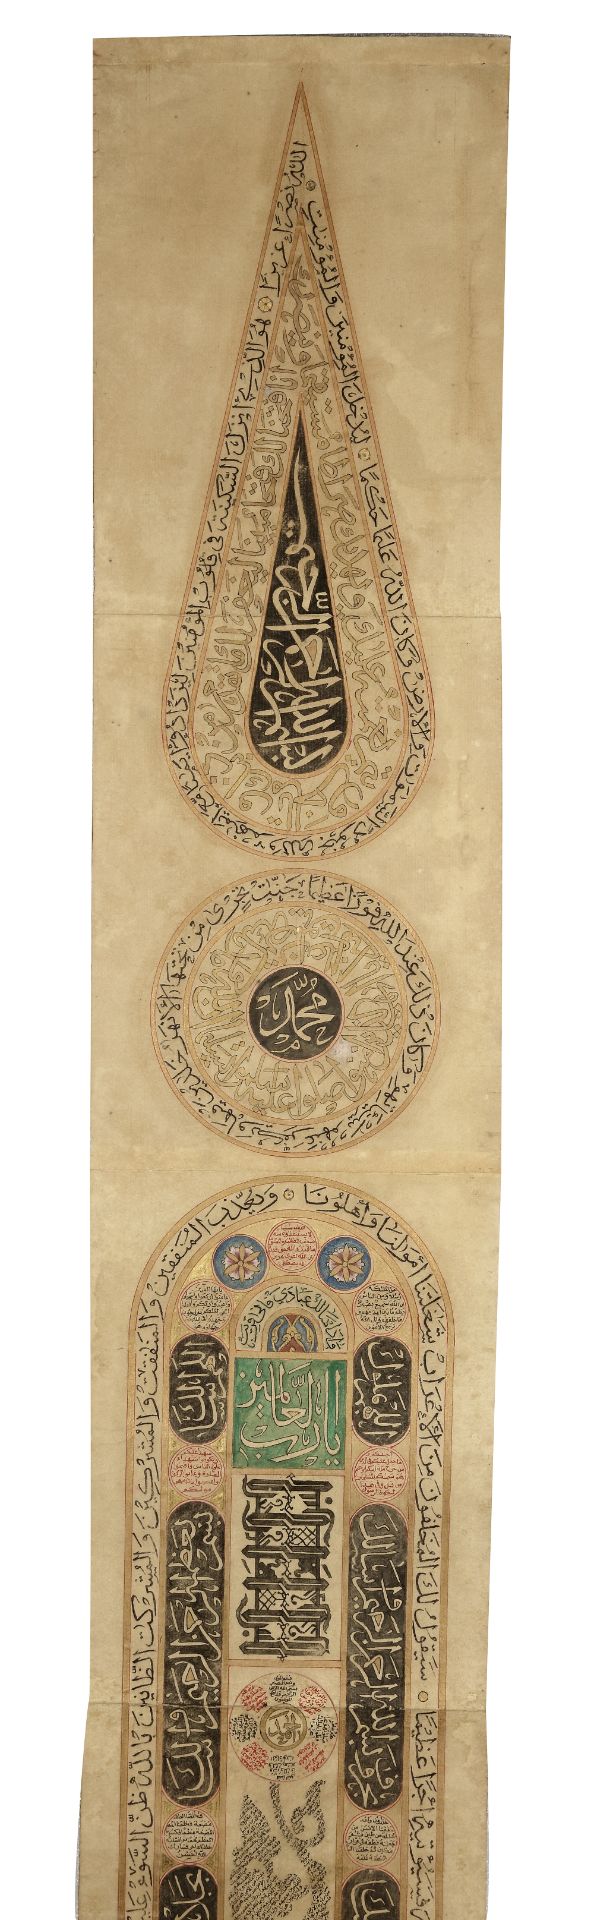 AN OTTOMAN ILLUMINATED PRAYER SCROLL, OTTOMAN TURKEY, 18TH CENTURY - Image 4 of 8